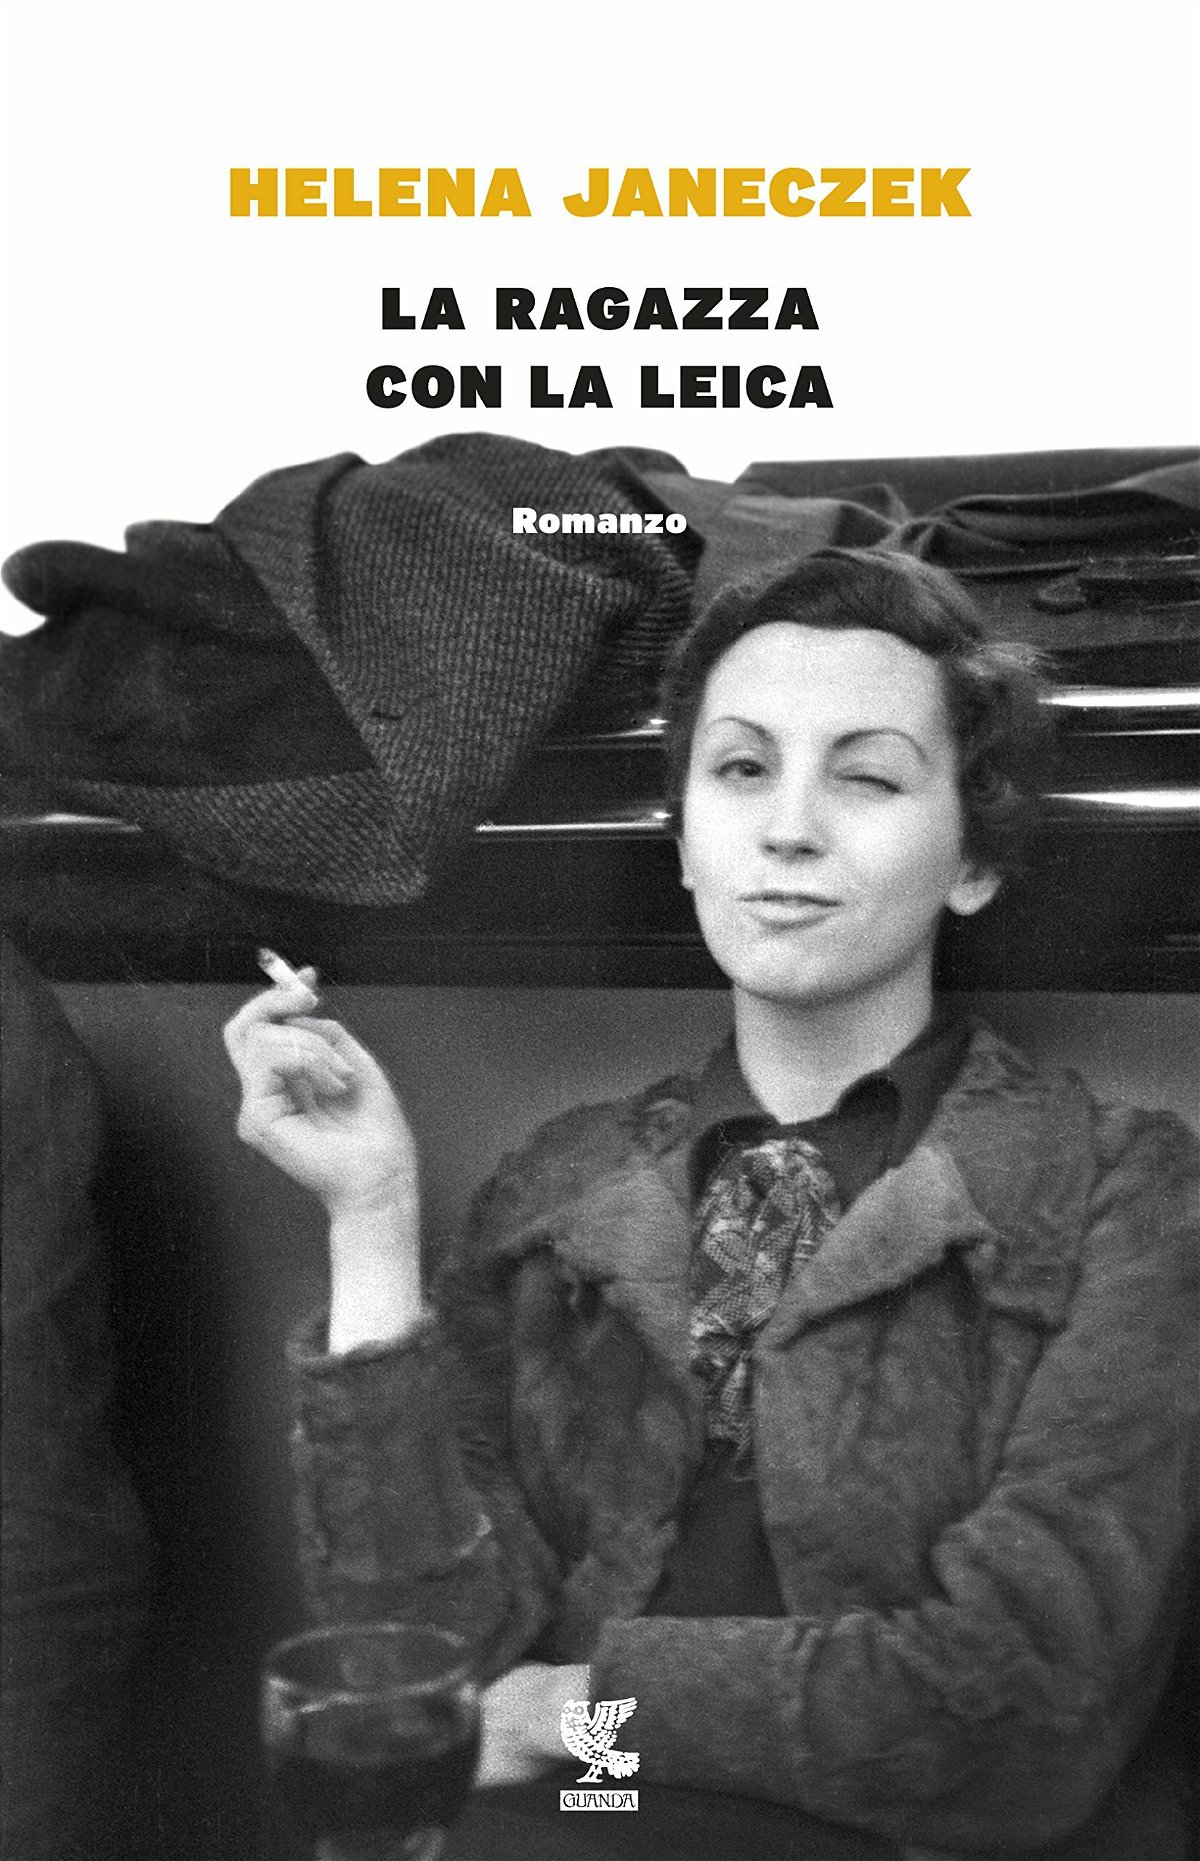 La copertina italiana di La ragazza con la leica